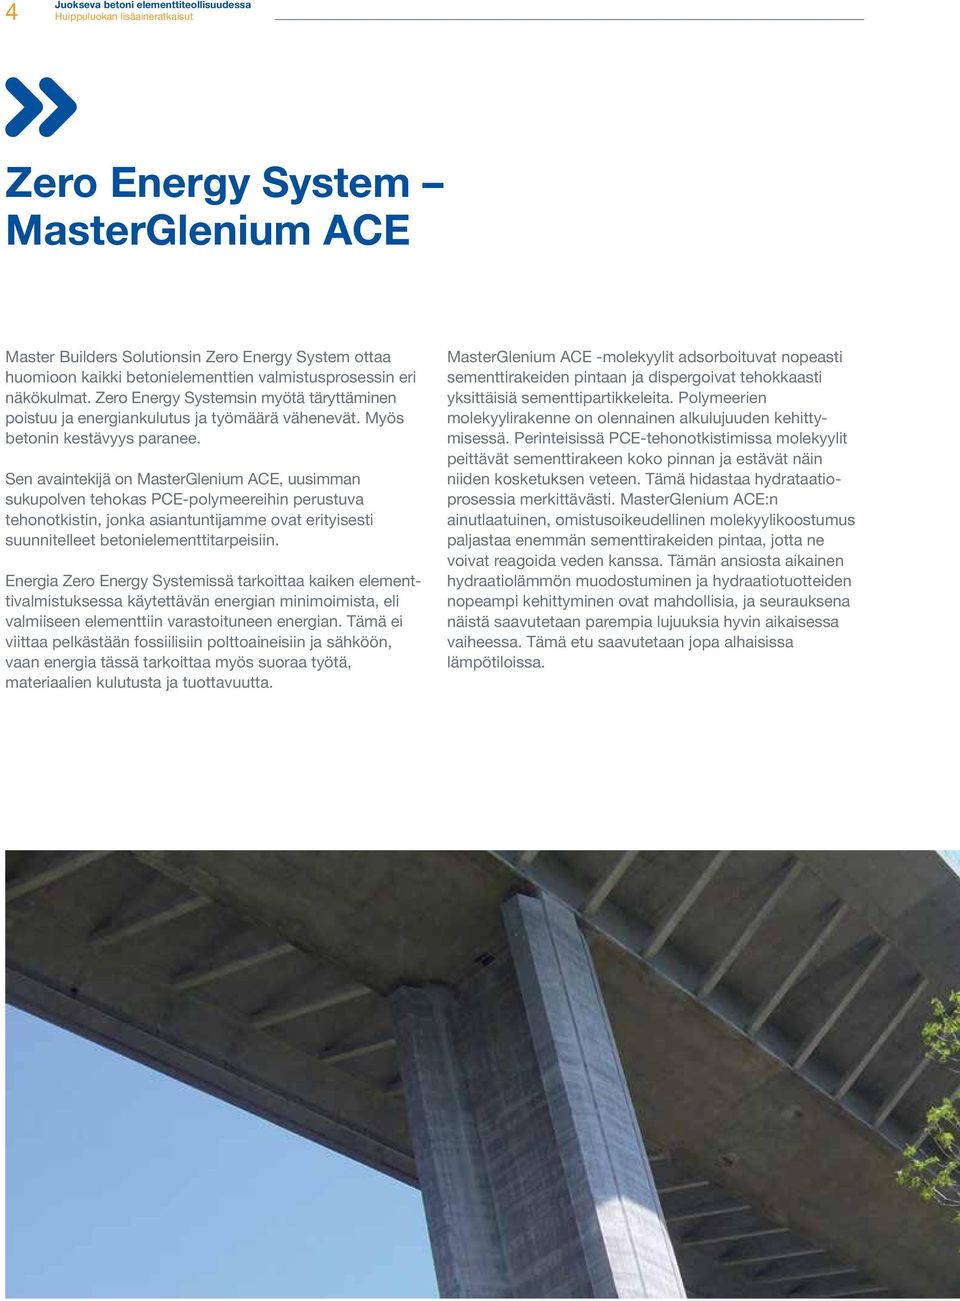 Sen avaintekijä on MasterGlenium ACE, uusimman sukupolven tehokas PCE-polymeereihin perustuva tehonotkistin, jonka asiantuntijamme ovat erityisesti suunnitelleet betonielementtitarpeisiin.